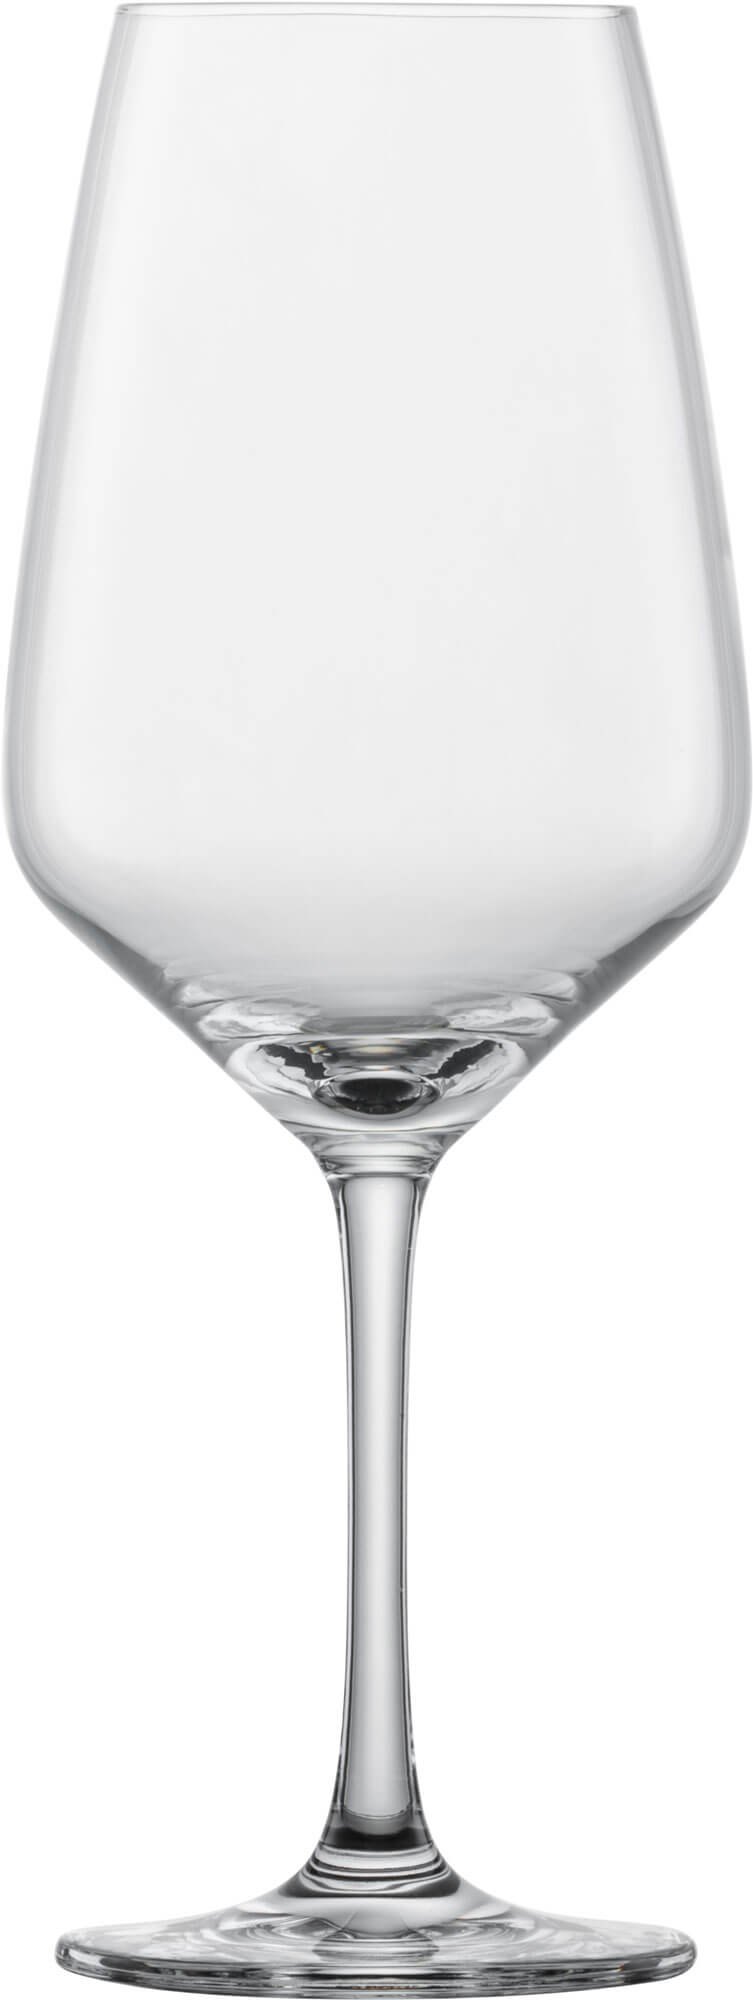 Rotweinglas Taste, Schott Zwiesel - 497ml (6 Stk.)